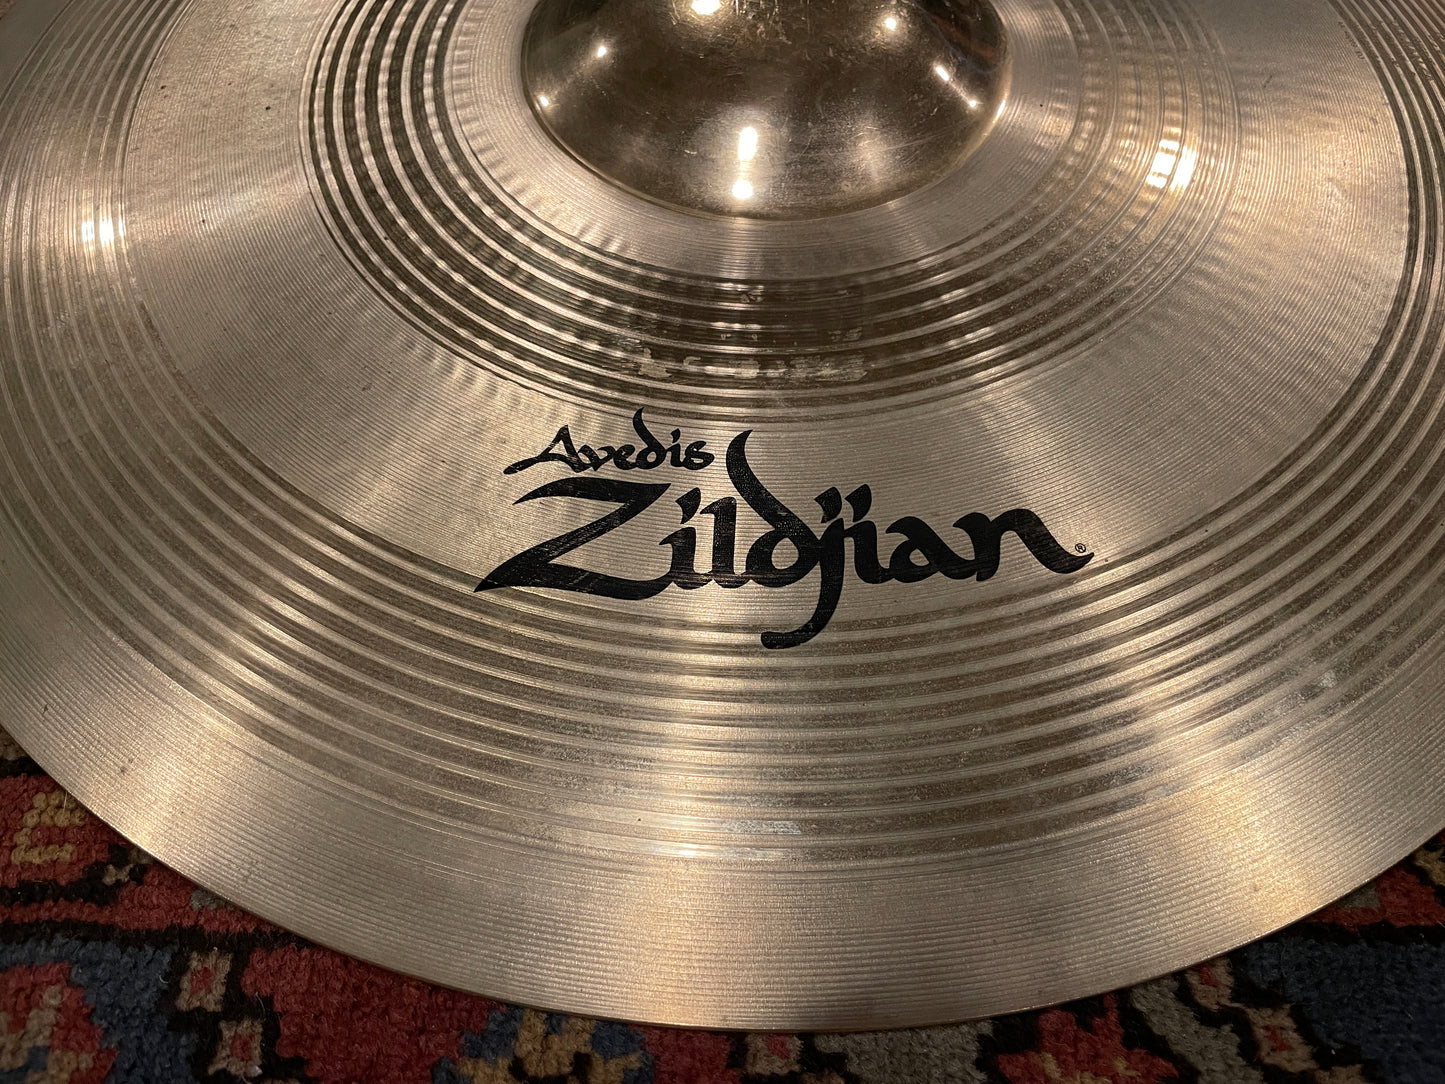 21" Zildjian A Custom Rezo Ride Cymbal 3220g